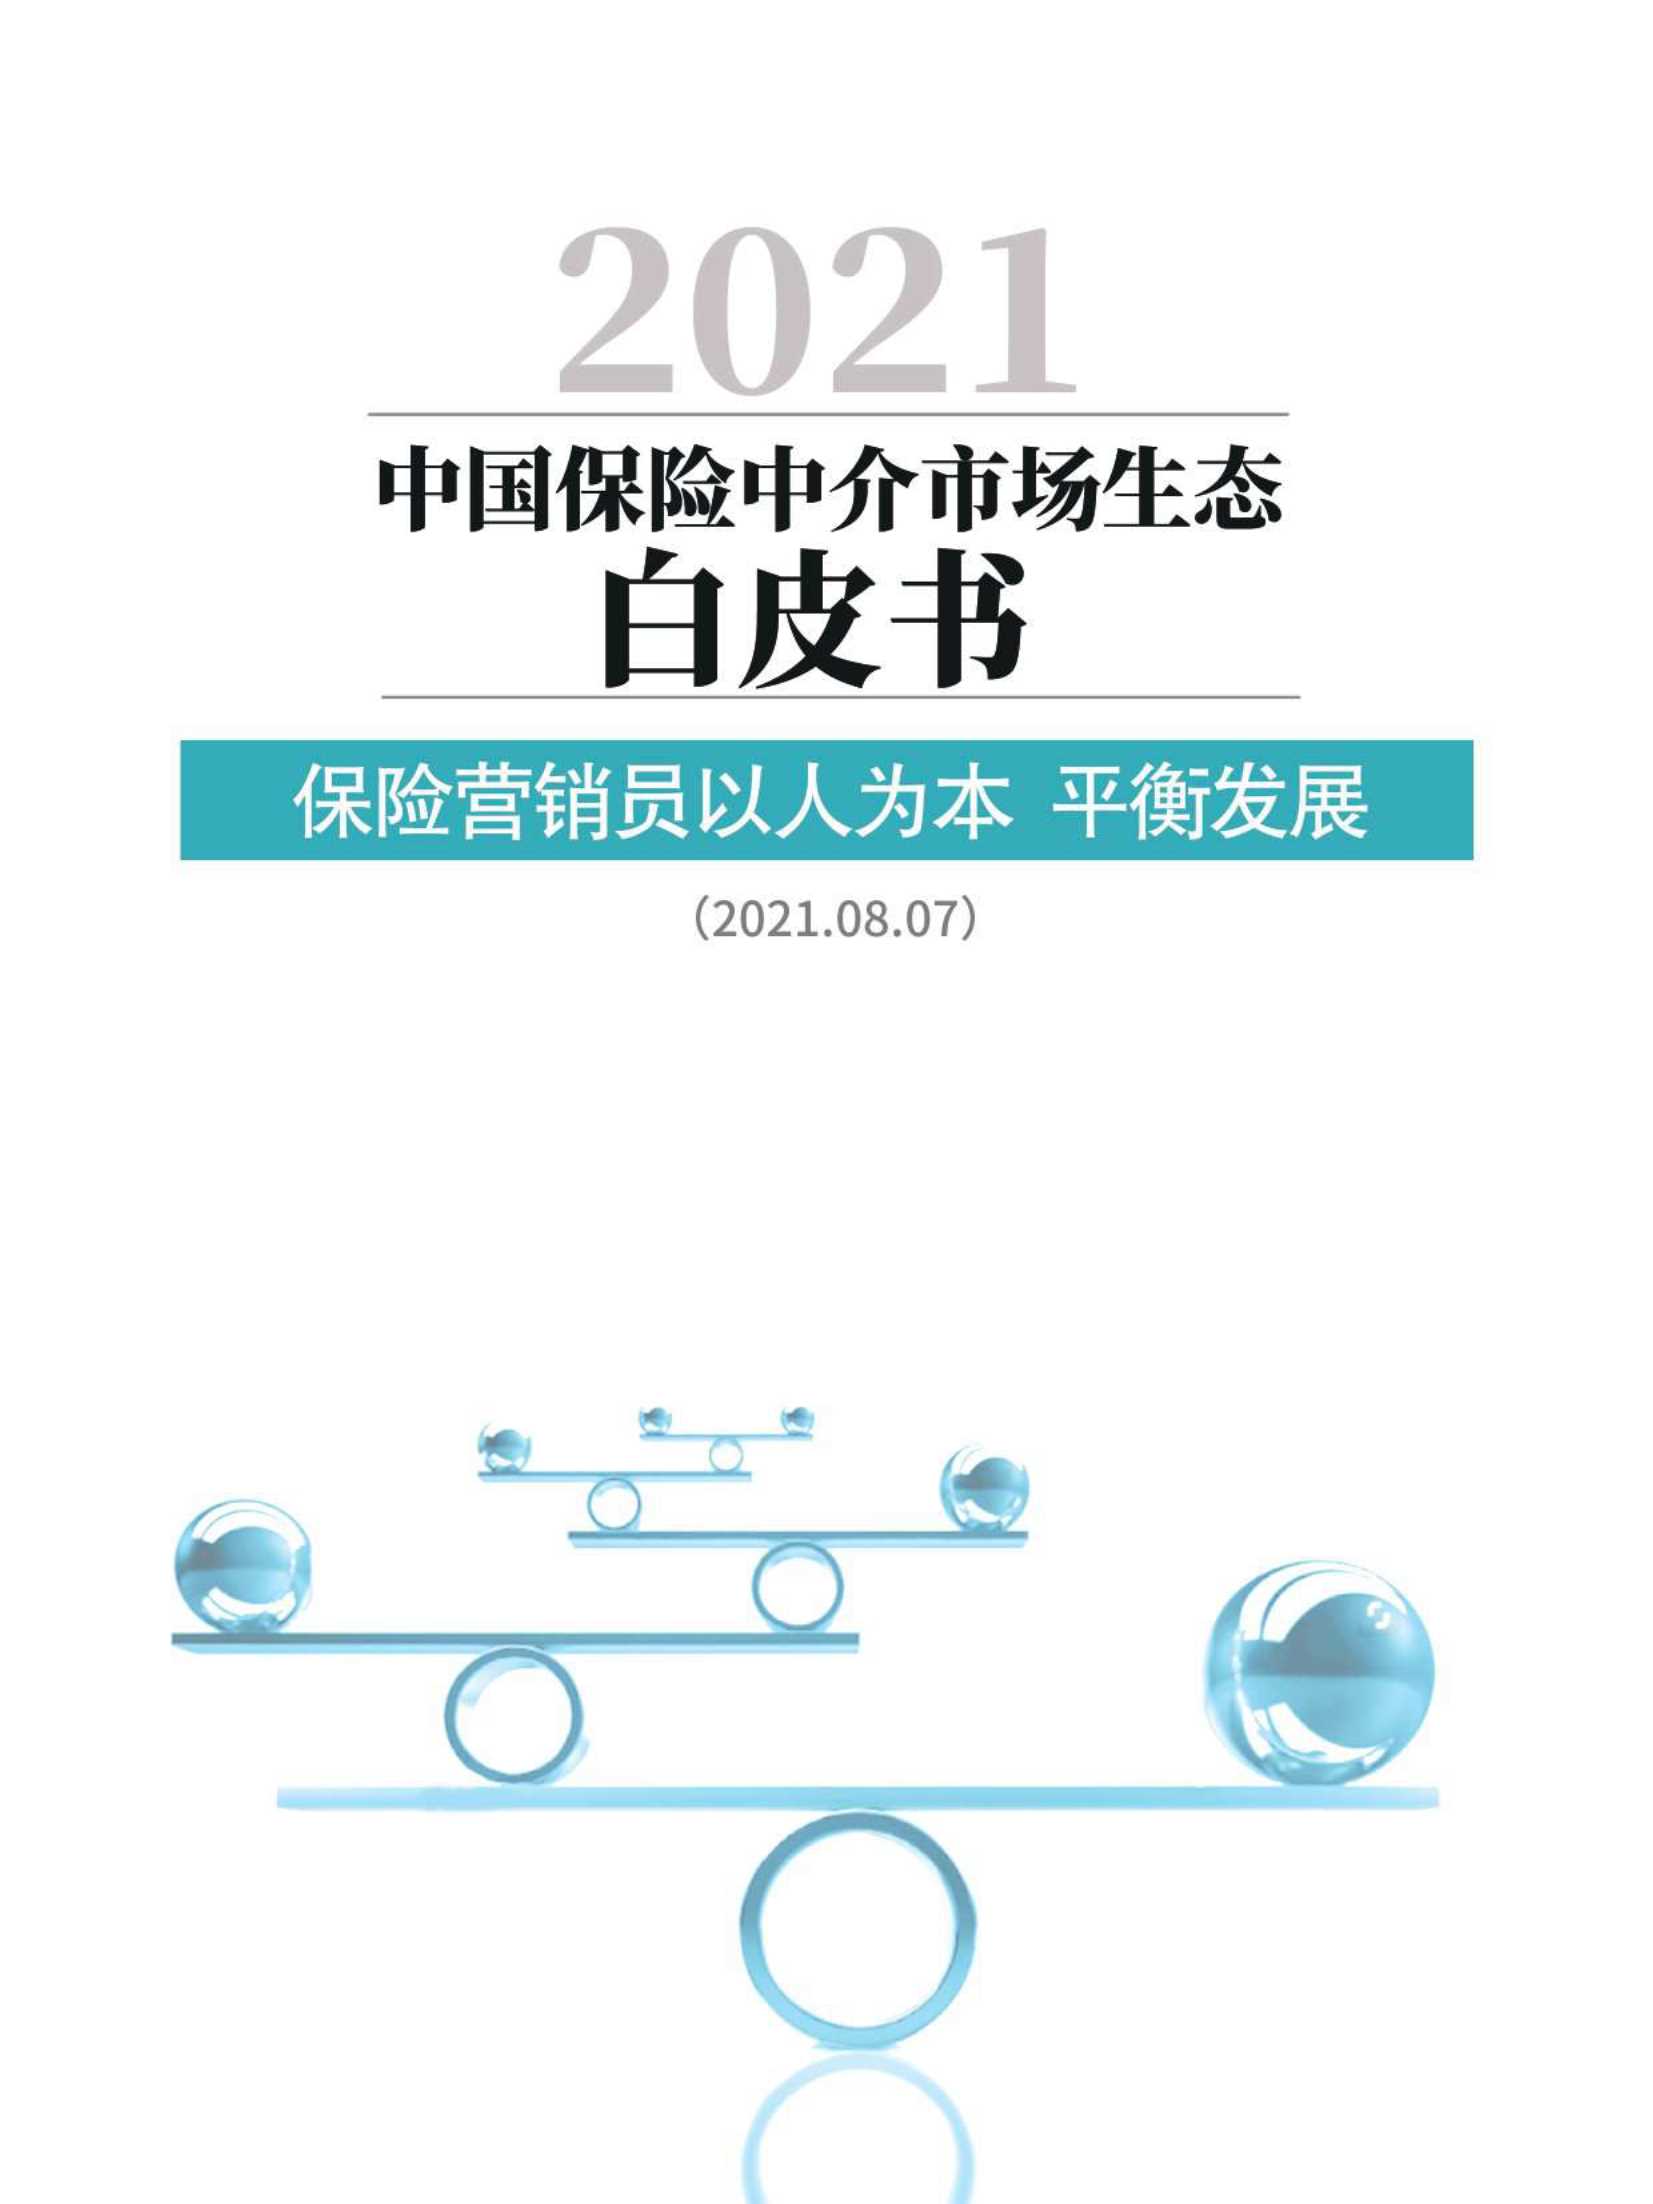 北大汇丰&IRDC-2021中国保险中介市场生态白皮书-2021.12-64页